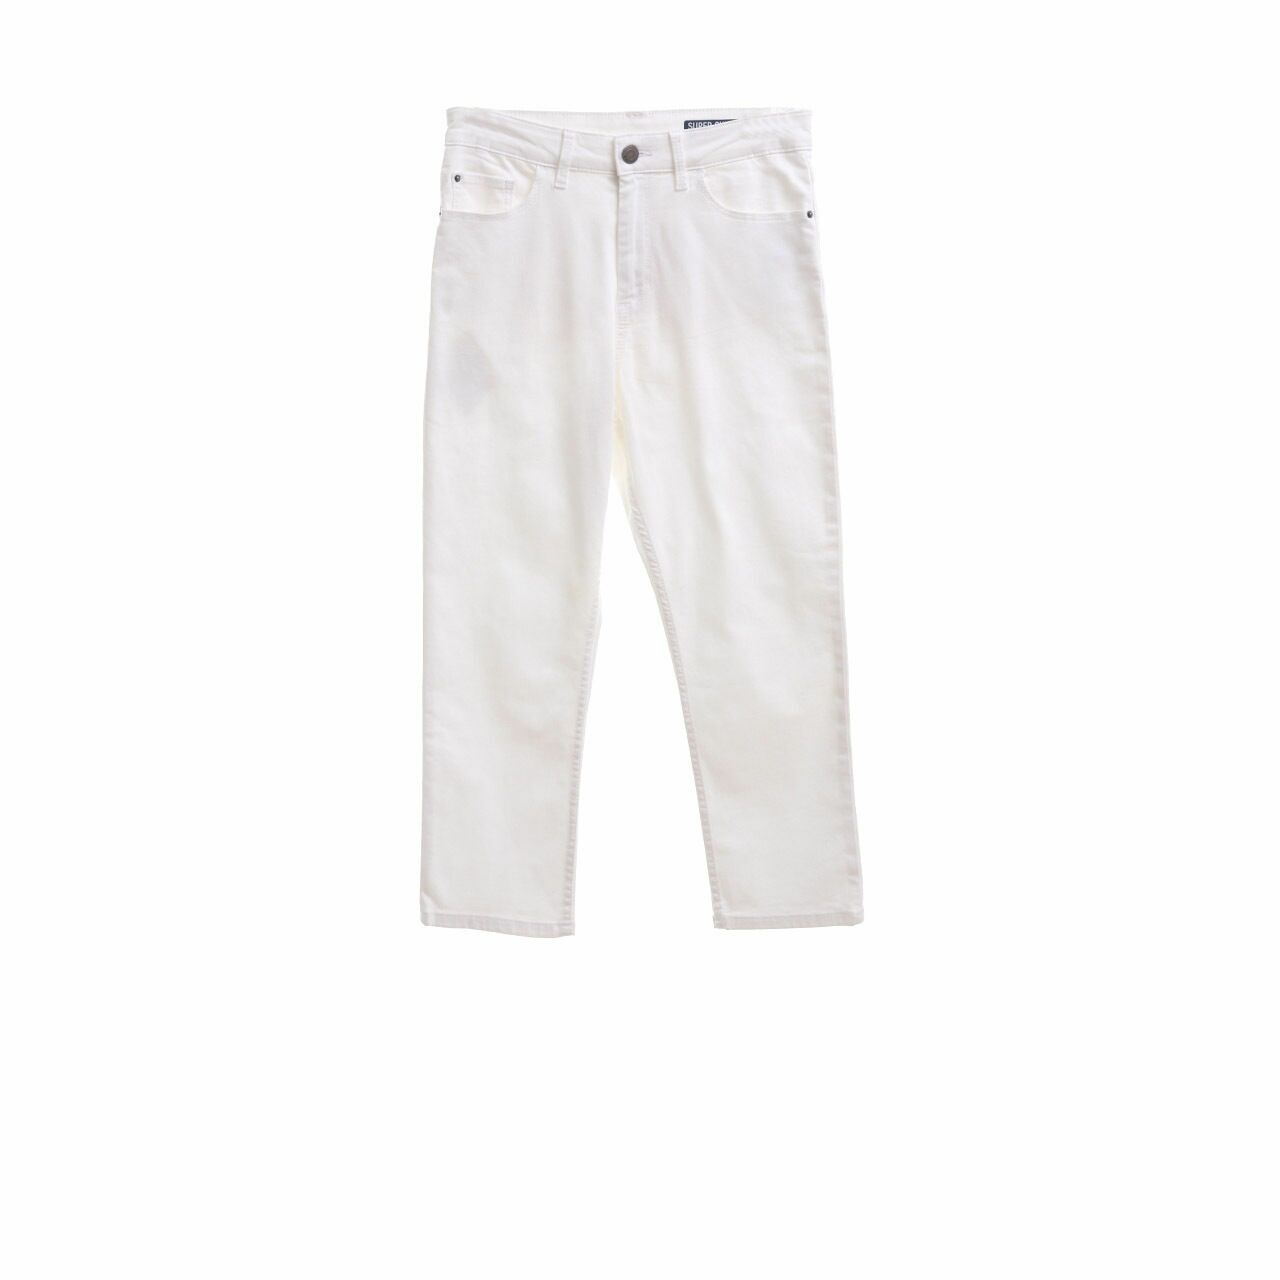 Marks & Spencer Broken White Long Pants